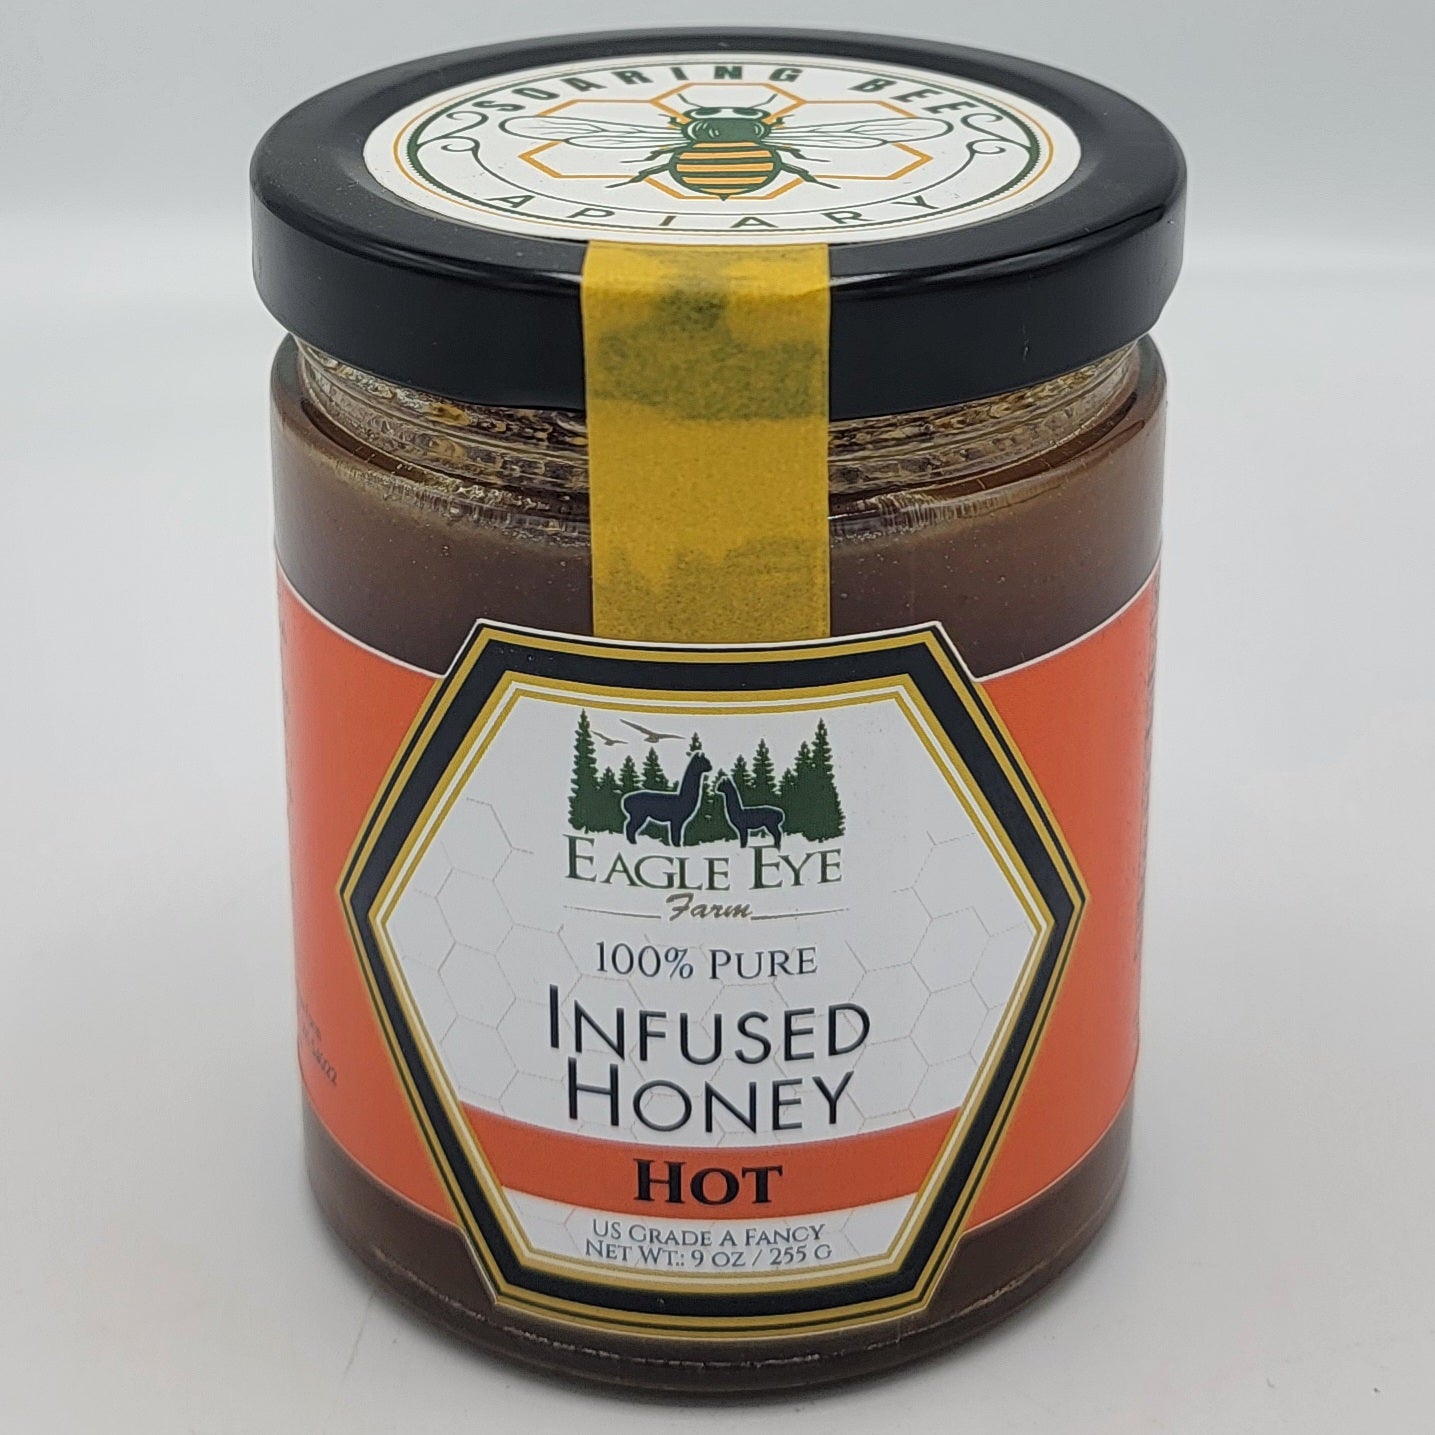 Eagle Eye Farm Infused Raw Honey